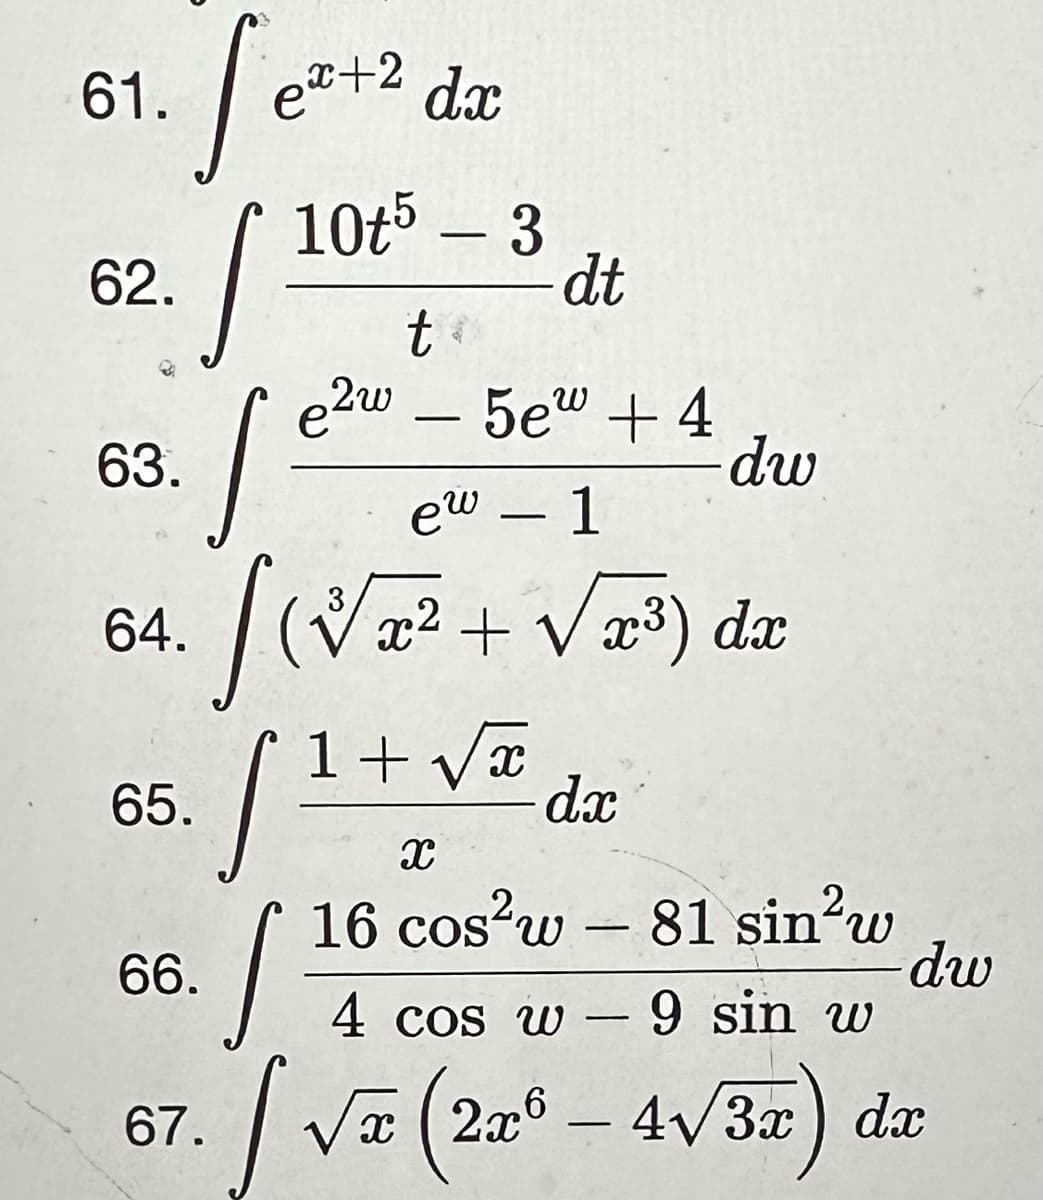 61.
62.
s
[e
five
S=
[²
9 sin w
[√x (2x6 - 4√3x) dx
X
63.
64.
65.
66.
dx
10t5 - 3
67.
ex+2
t
e2w 5e + 4
ew - 1
3
-
dt
x² + √x³) dx
4 cos w
dw
1+√x
dx
X
16 cos²w - 81 sin²w
-
dw